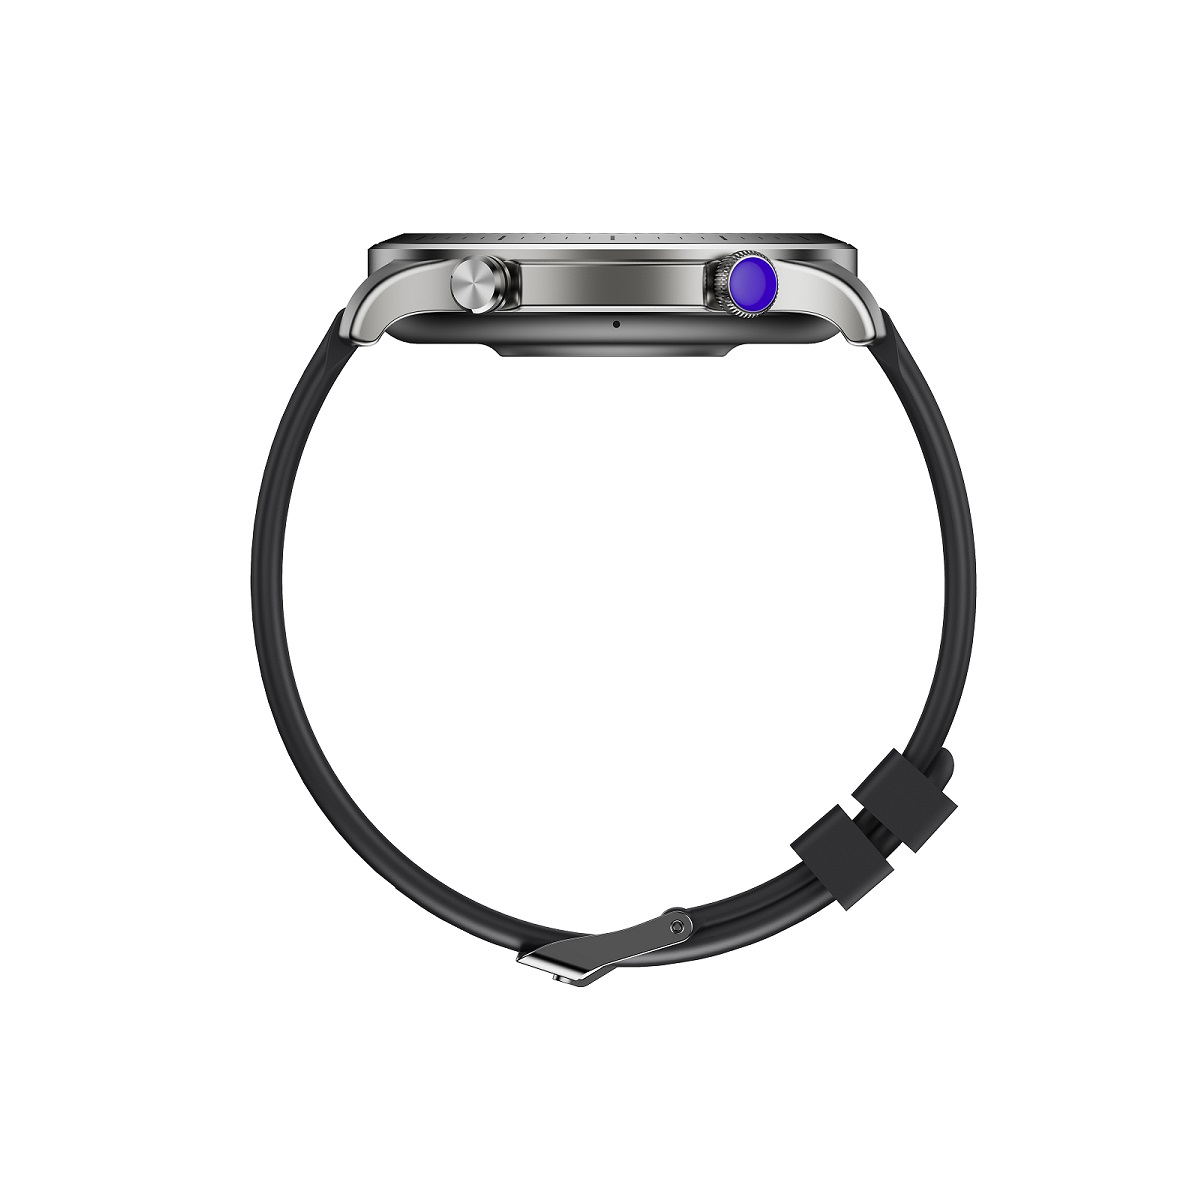 Elegancki zegarek mski wodoodporny elektroniczny sportowy z okrga tarcz smartwatch Riversong Motive 9 Pro szary SW901 / 4